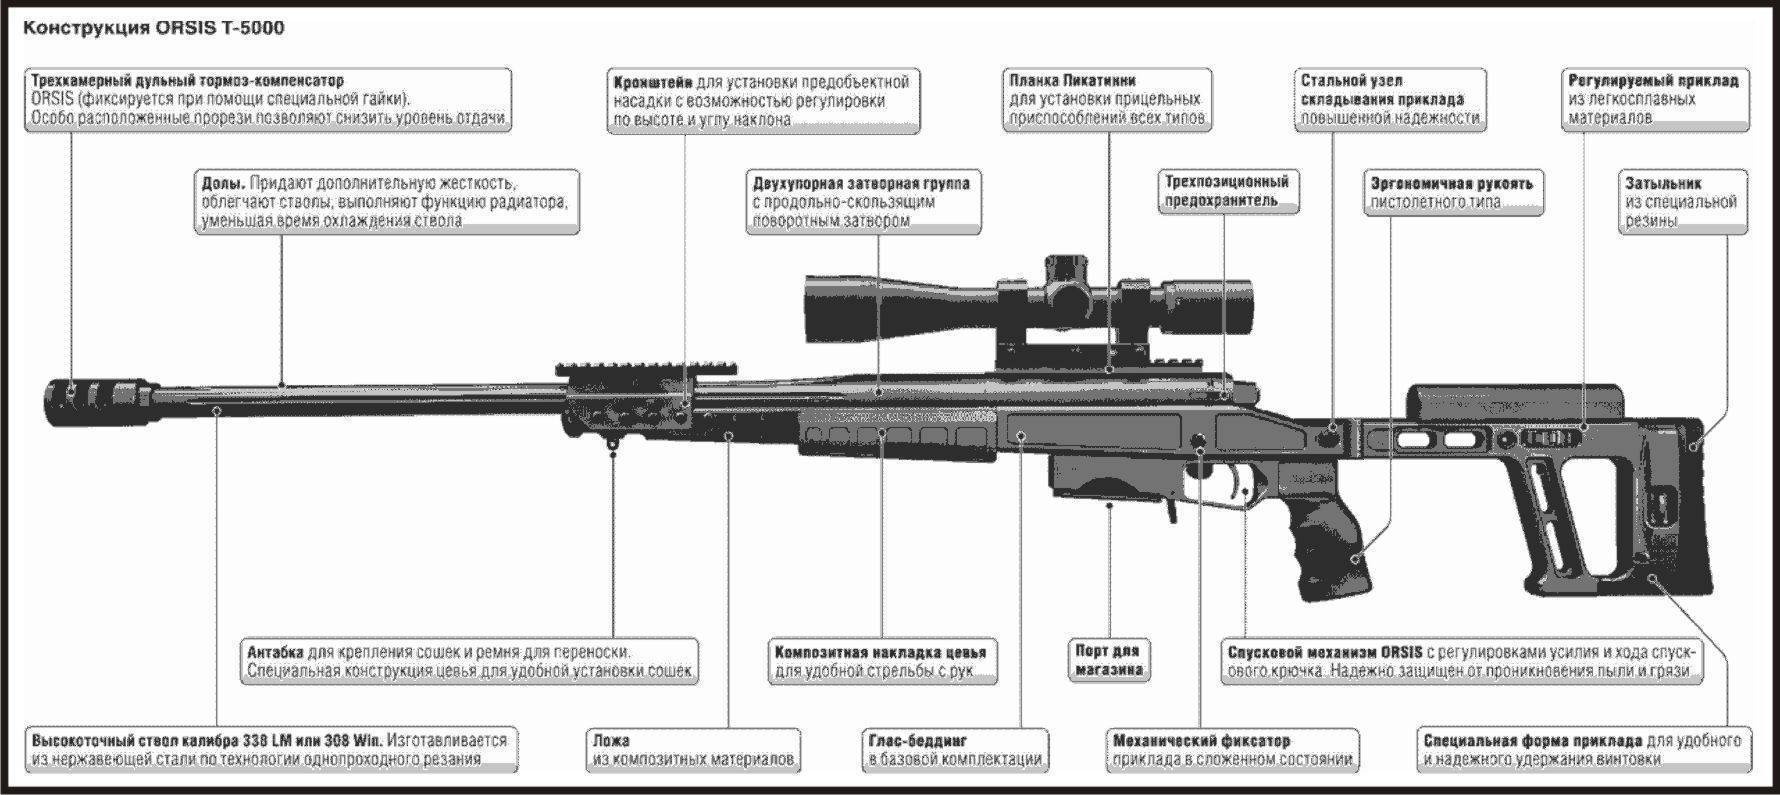 Св 98, размеры и ттх снайперской винтовки, ложе и приклад, модернизация карабина, скорострельность и точность, глушитель, ствол и магазин